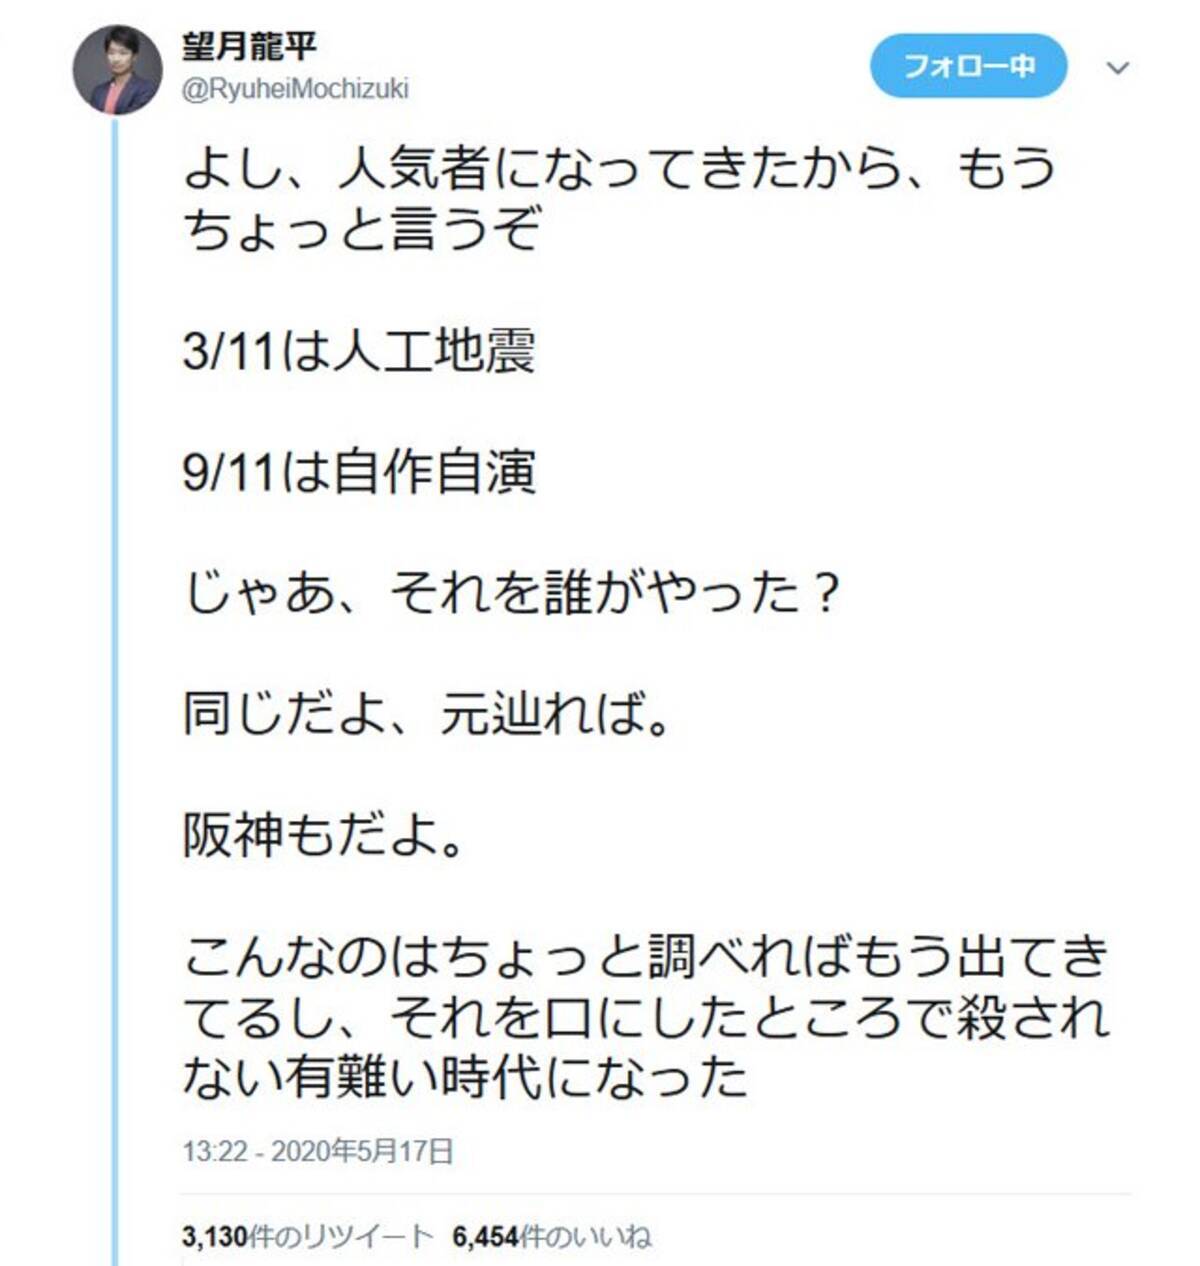 望月龍平さん 3 11は人工地震 9 11は自作自演 ツイートに反響 なりすましのアカウントも登場 年5月19日 エキサイトニュース